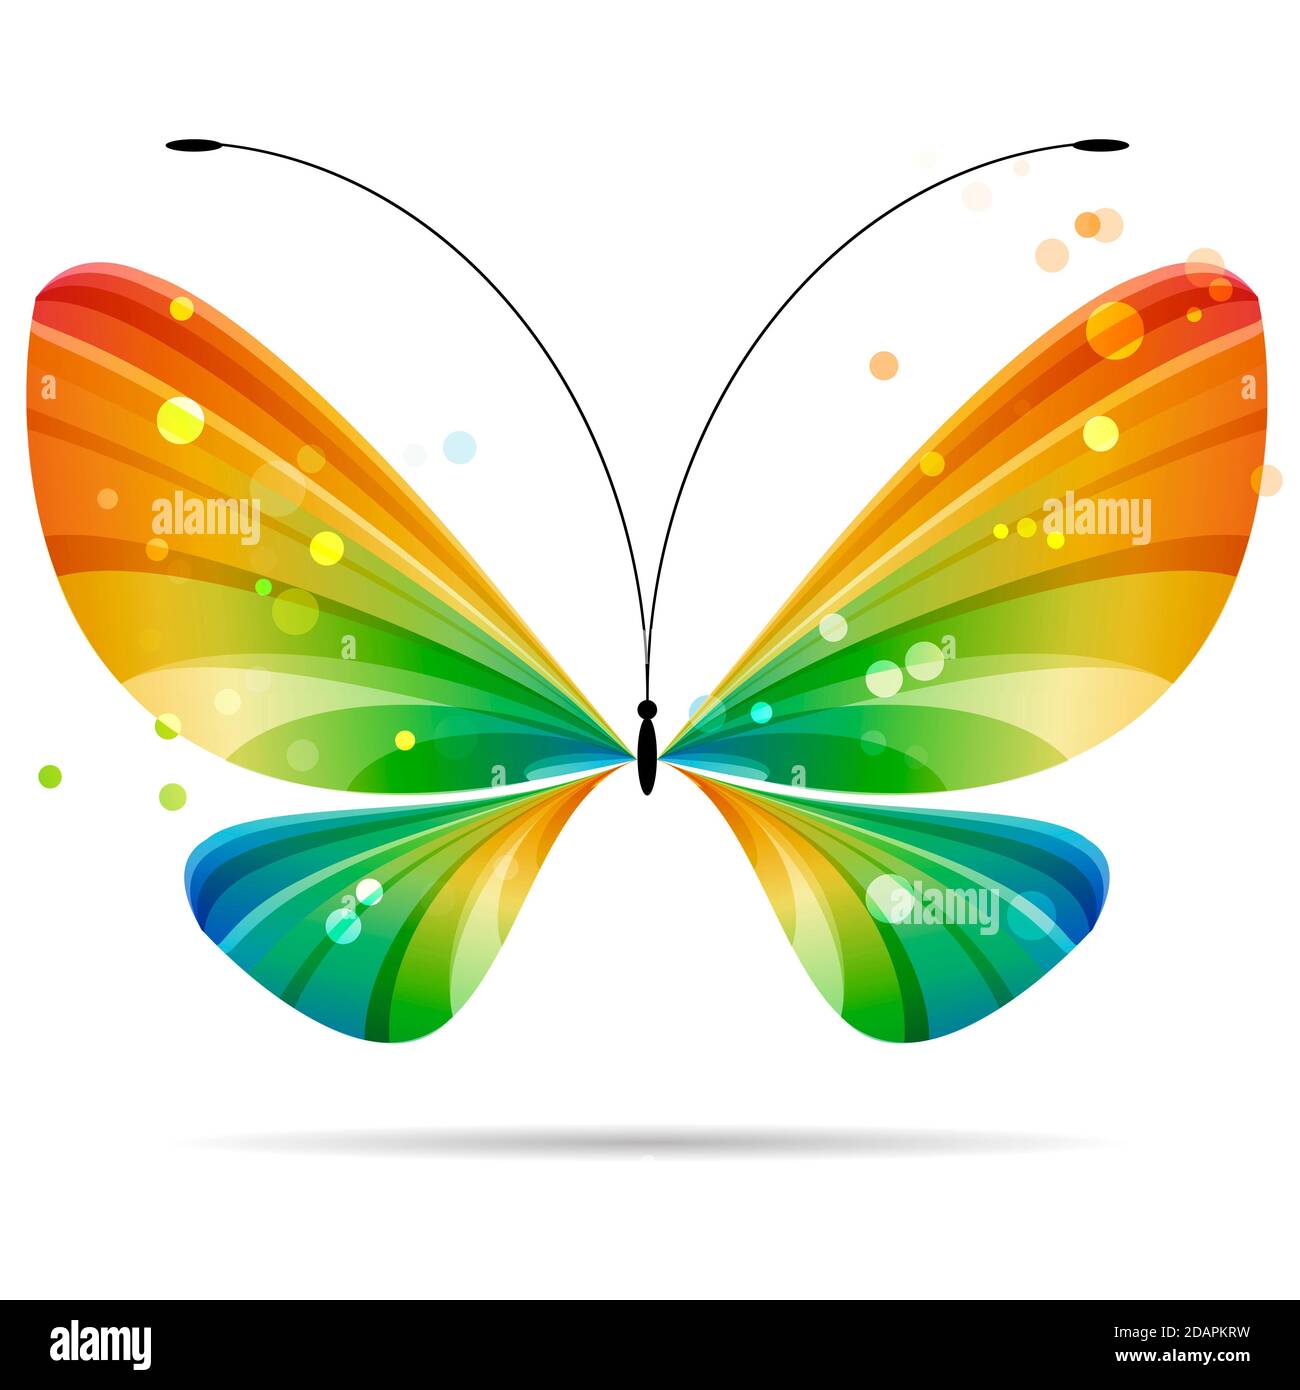 magnifique papillon coloré à rayures multicolores sur fond blanc, antennes noires, quatre ailes, deux paires d'ailes Banque D'Images